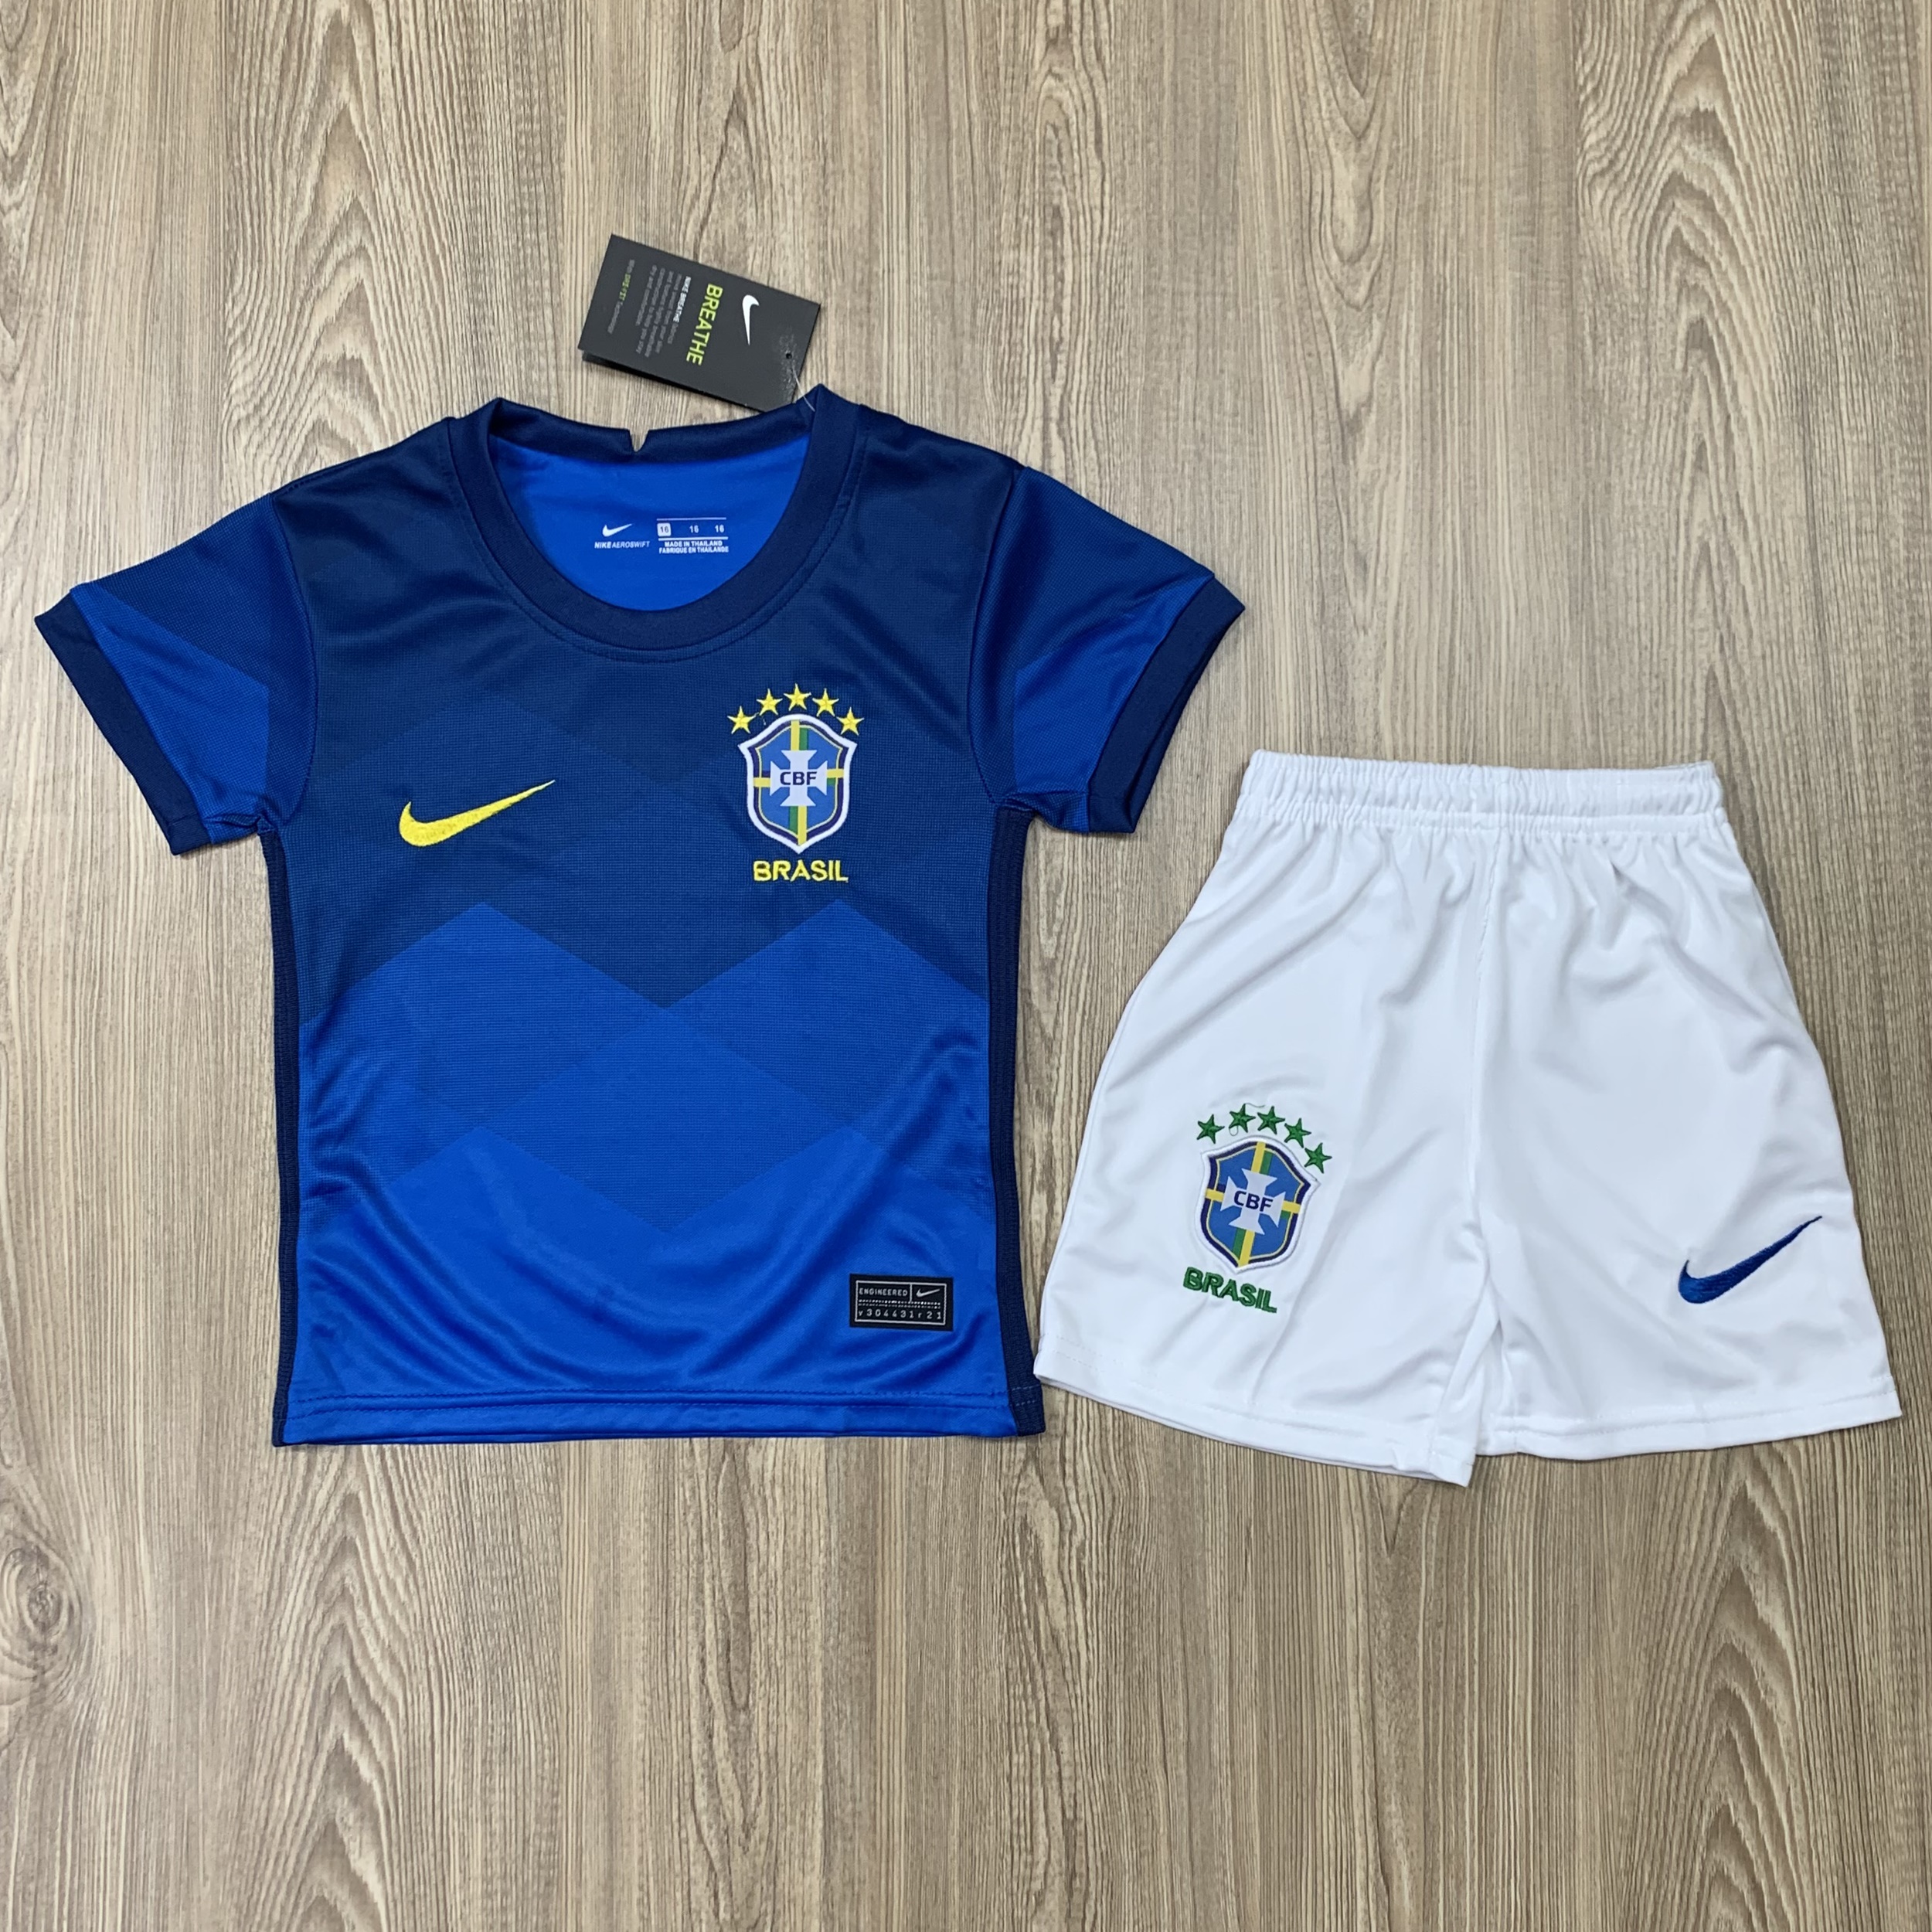 ชุดบอลเด็ก Brasil ชุดกีฬาเด็กทีม เสื้อทีมบาร์ซิล ซื้อครั้งเดียวได้ทั้งชุด (เสื้อ+กางเกง) ตัวเดียวในราคาส่ง สินค้าเกรด-AAA